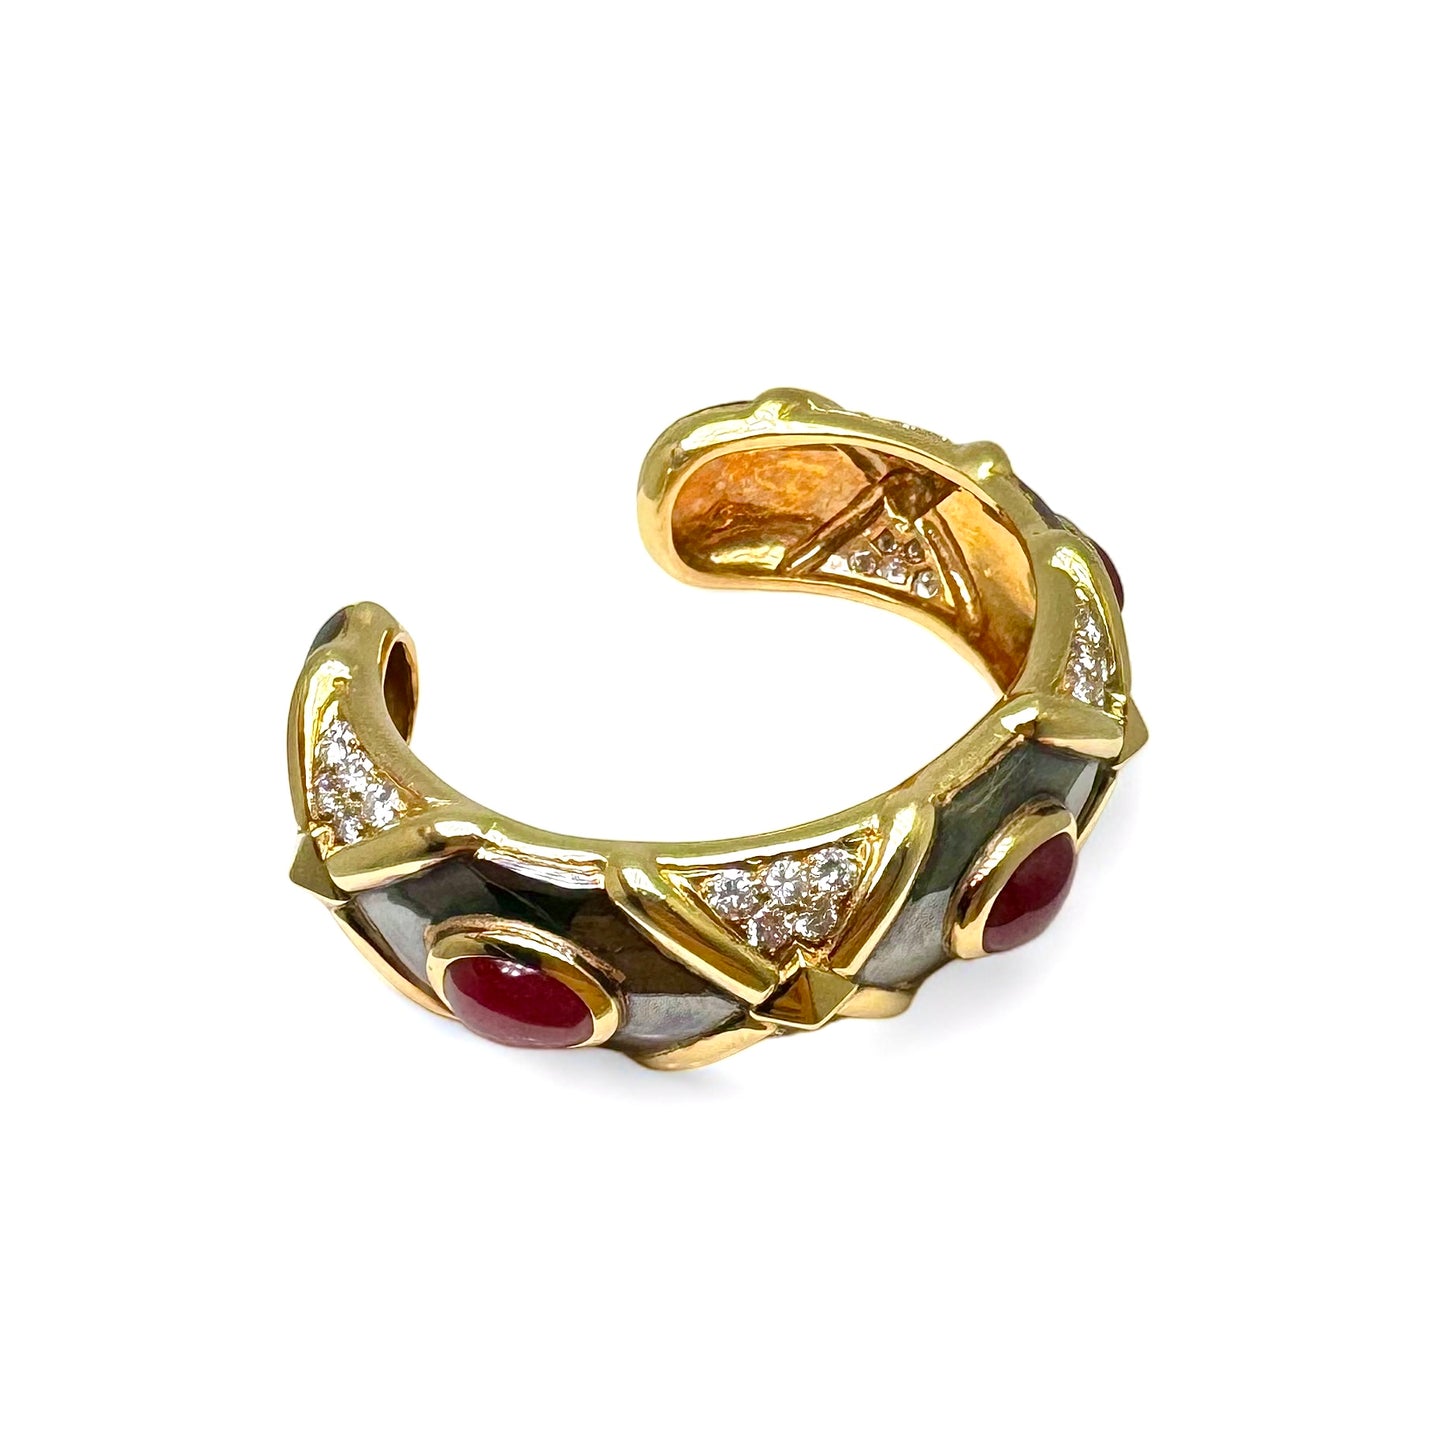 Bracelet vintage jonc en or noirci et jaune orné de rubis et diamants.